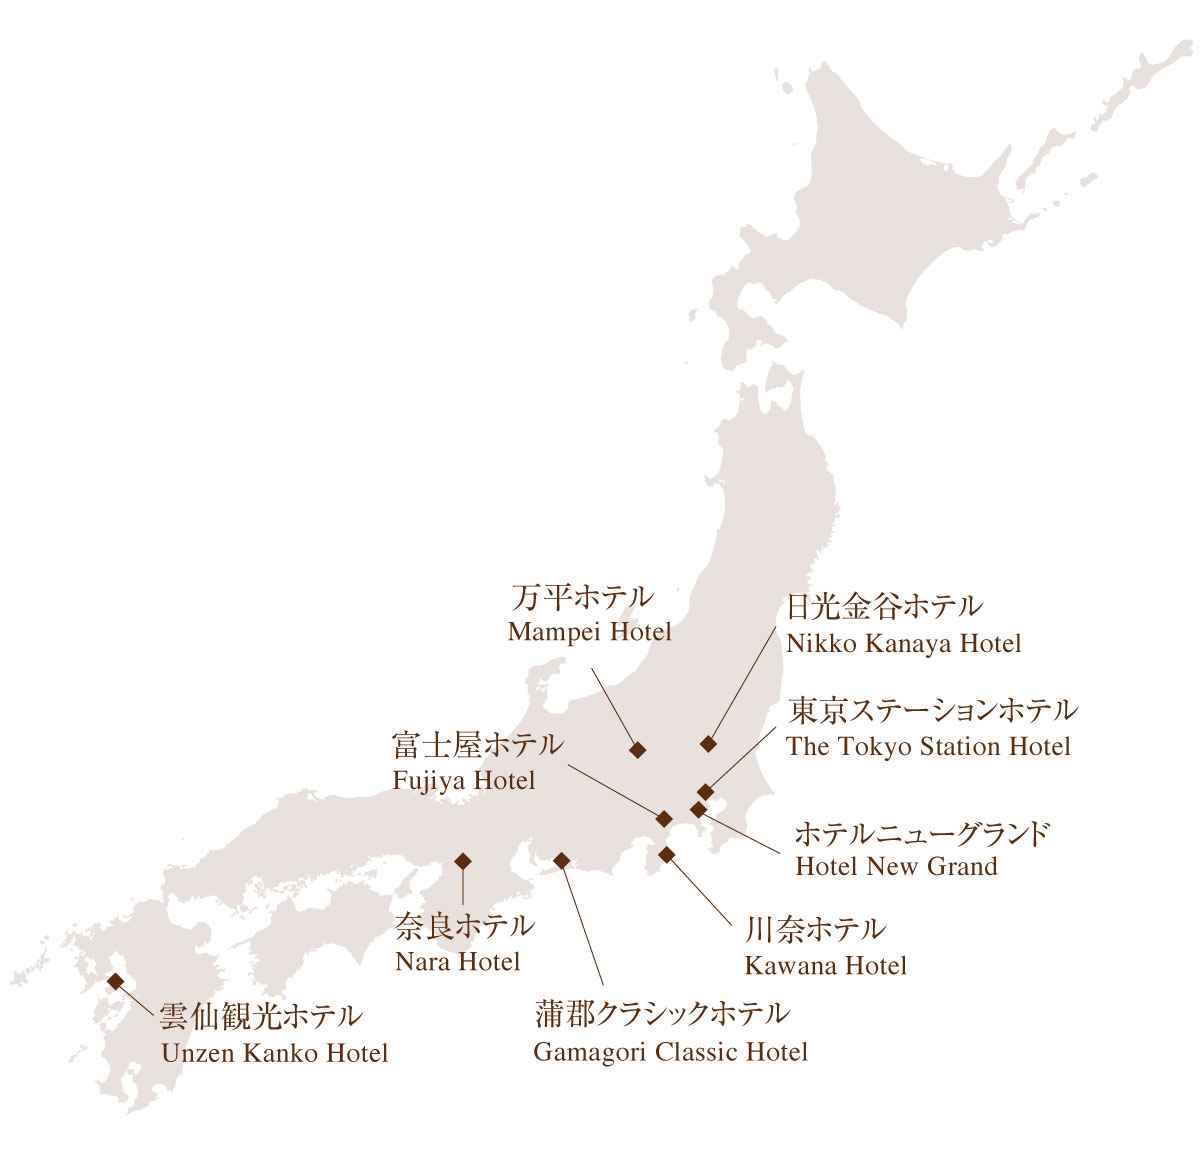 日本クラシックホテルの会 地図